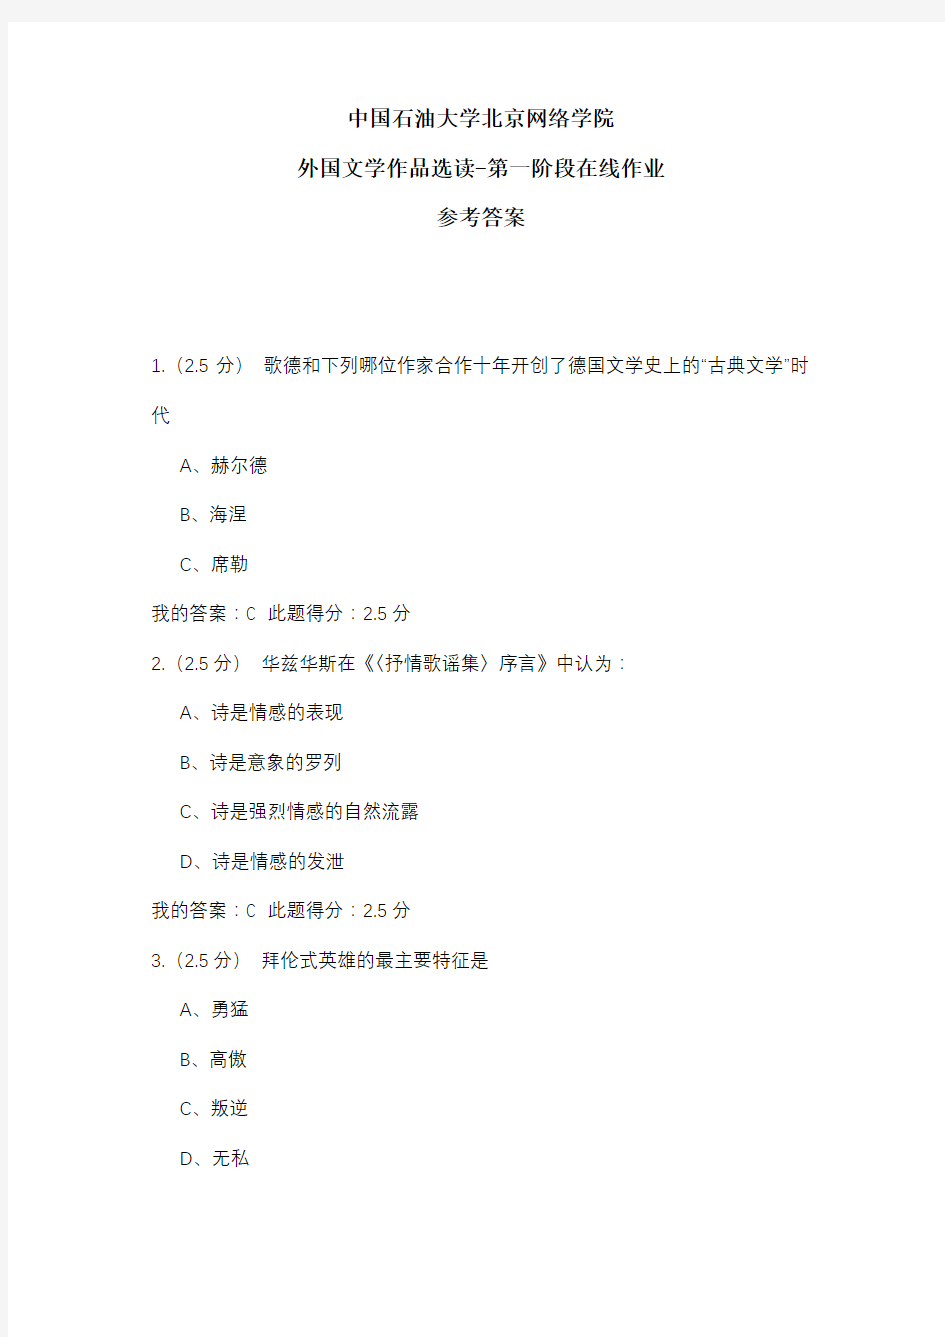 2020年中国石油大学北京网络学院 外国文学作品选读-第一阶段在线作业 参考答案